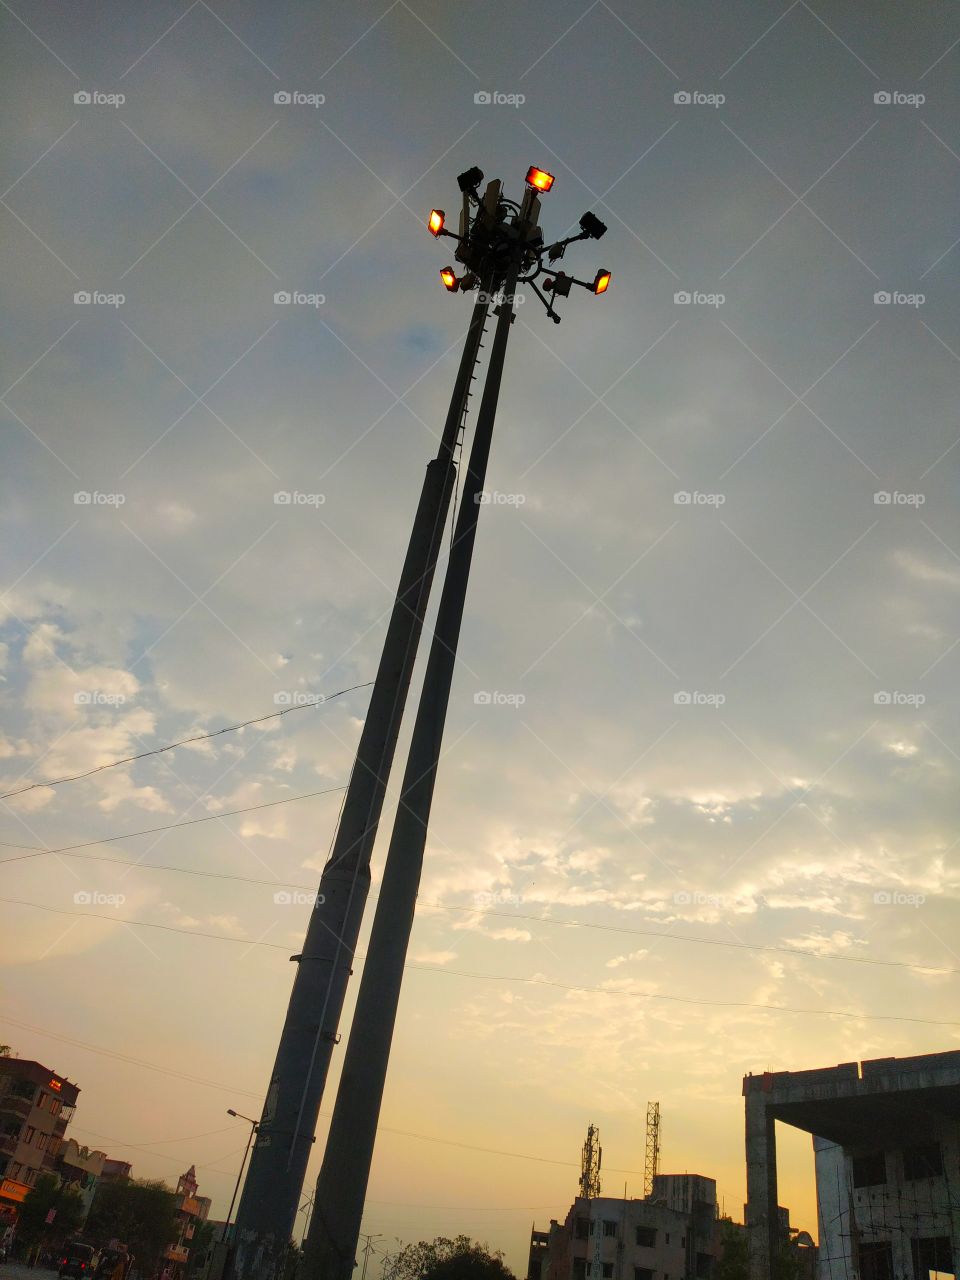 light pole